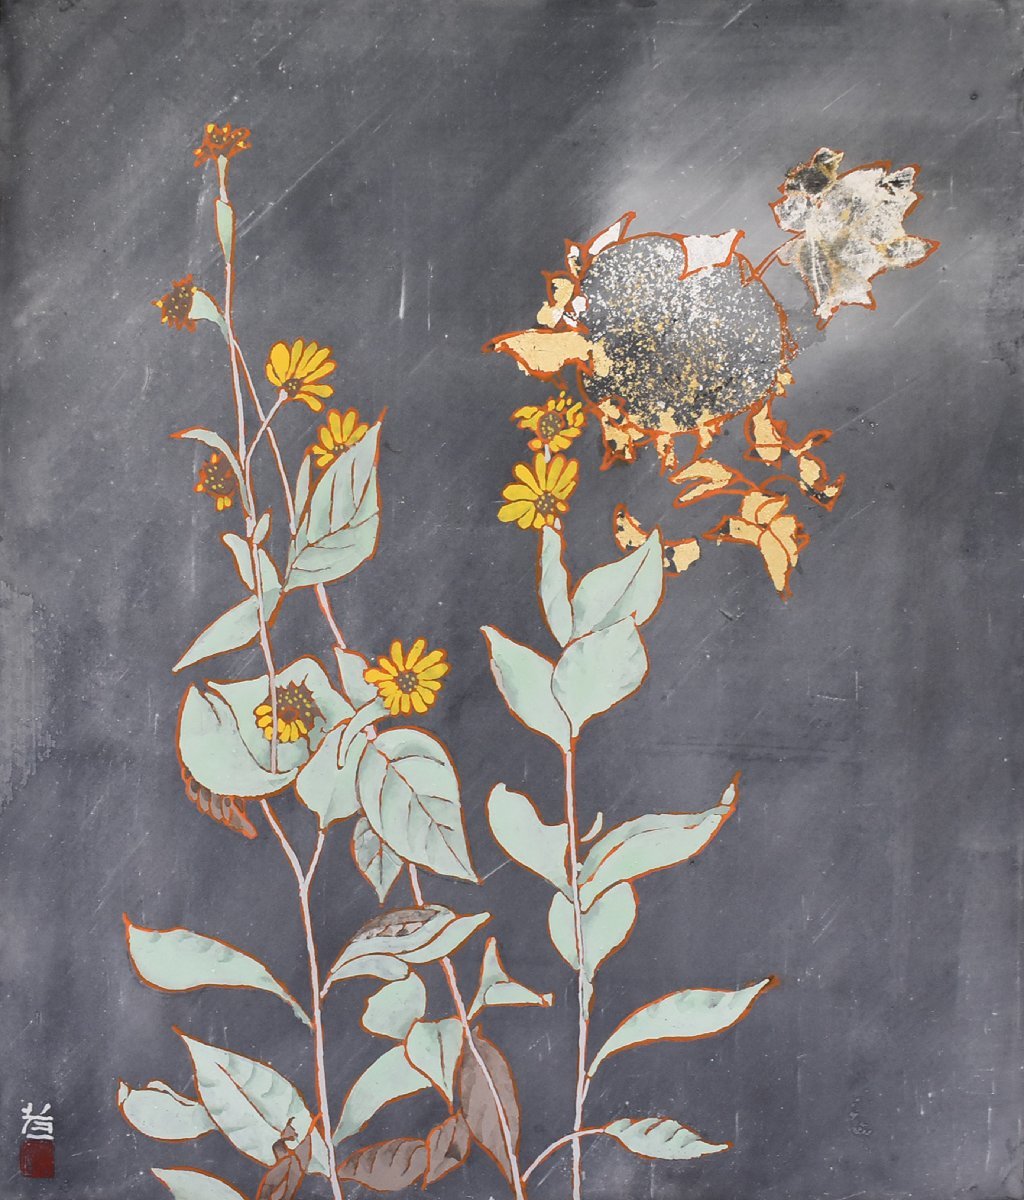 [معرض سيكو - 5, 500 قطعة معروضة! ابحث عن عملك المفضل] عمل الرسام الياباني الشهير Koichi سوزوكي 10F المجاور يأتي بإطار, تلوين, اللوحة اليابانية, الزهور والطيور, الطيور والوحوش